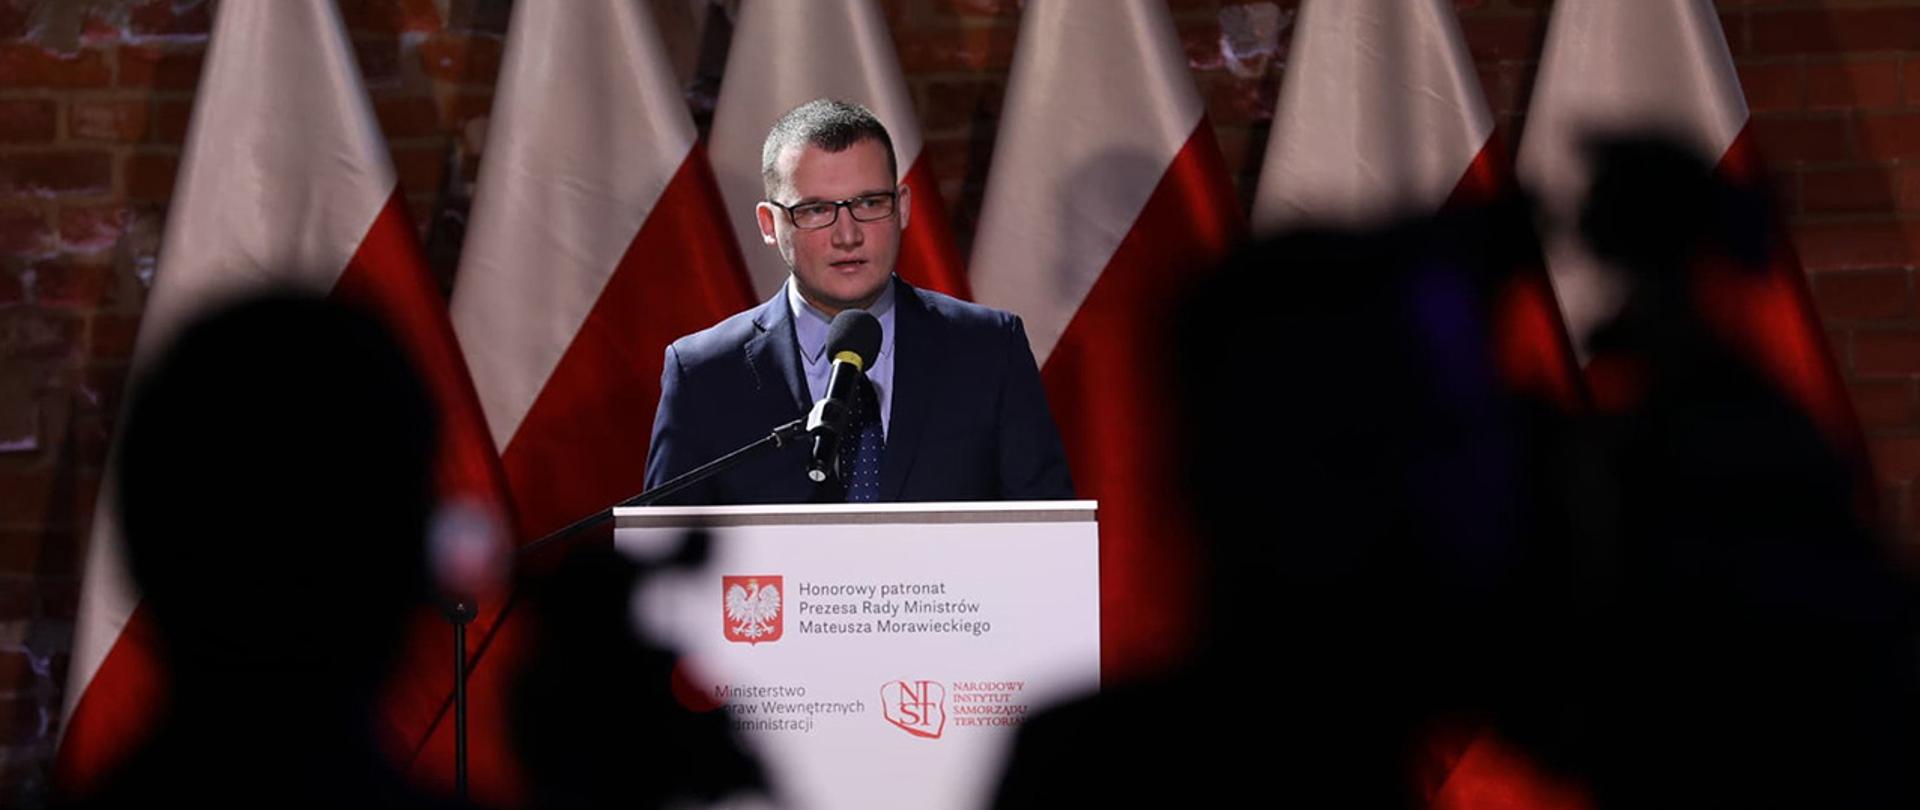 Na zdjęciu widać wiceministra Pawła Szefernakera stojącego przy mównicy i przemawiającego. W tle widać rząd flag Polski.